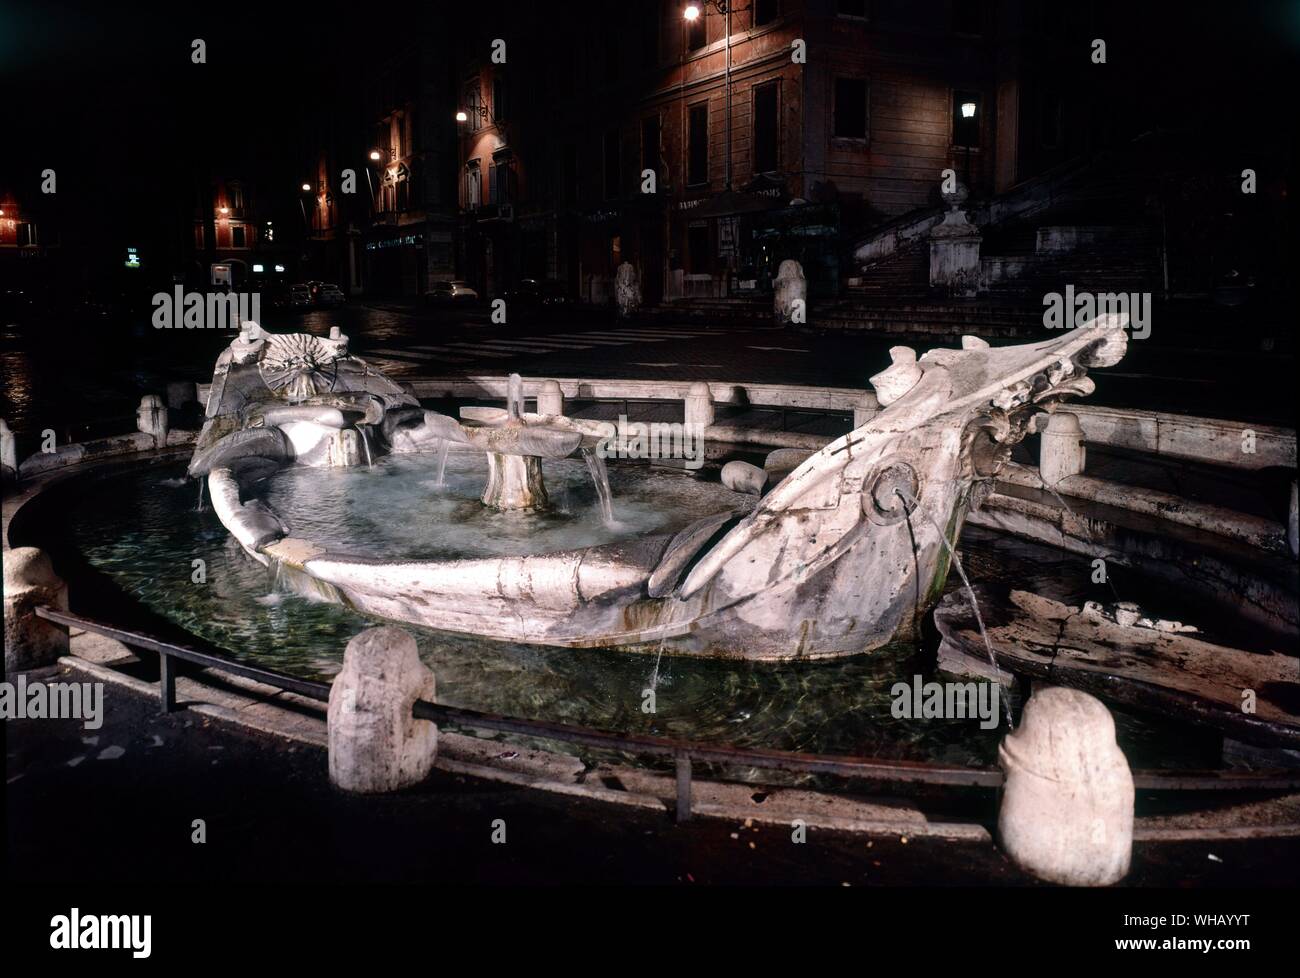 Les eaux de Rome par H. C. Morton. La Barcaccia dans la Piazza di Spagna. Pl. 4, p. 44. Dans la Piazza à la base est le début du Baroque fontaine dite La Barcaccia (le vilain bateau), souvent portés à Pietro Bernini, père d'un fils plus célèbre Gian Lorenzo Bernini, qui a collaboré à la décoration. Selon une légende, le Pape Urbain VIII avait une fontaine mettre dans l'endroit qu'il avait été impressionné par un bateau apporté ici par une inondation du Tibre.. . Banque D'Images